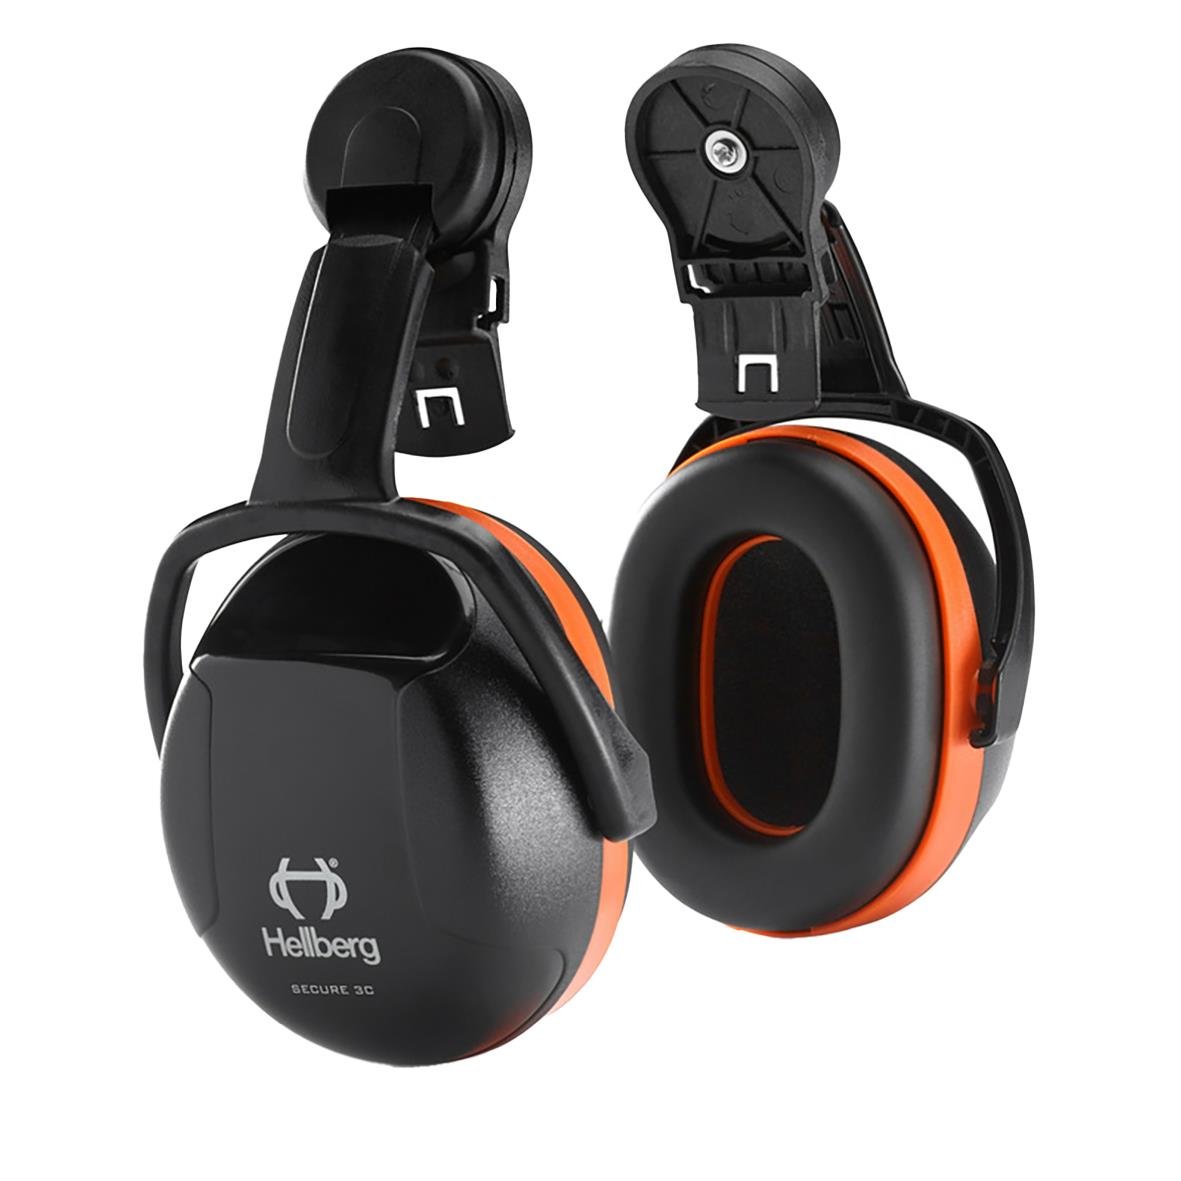 Hörselkåpa Hellberg Secure 3C Hjälmkåpa Svart/Orange